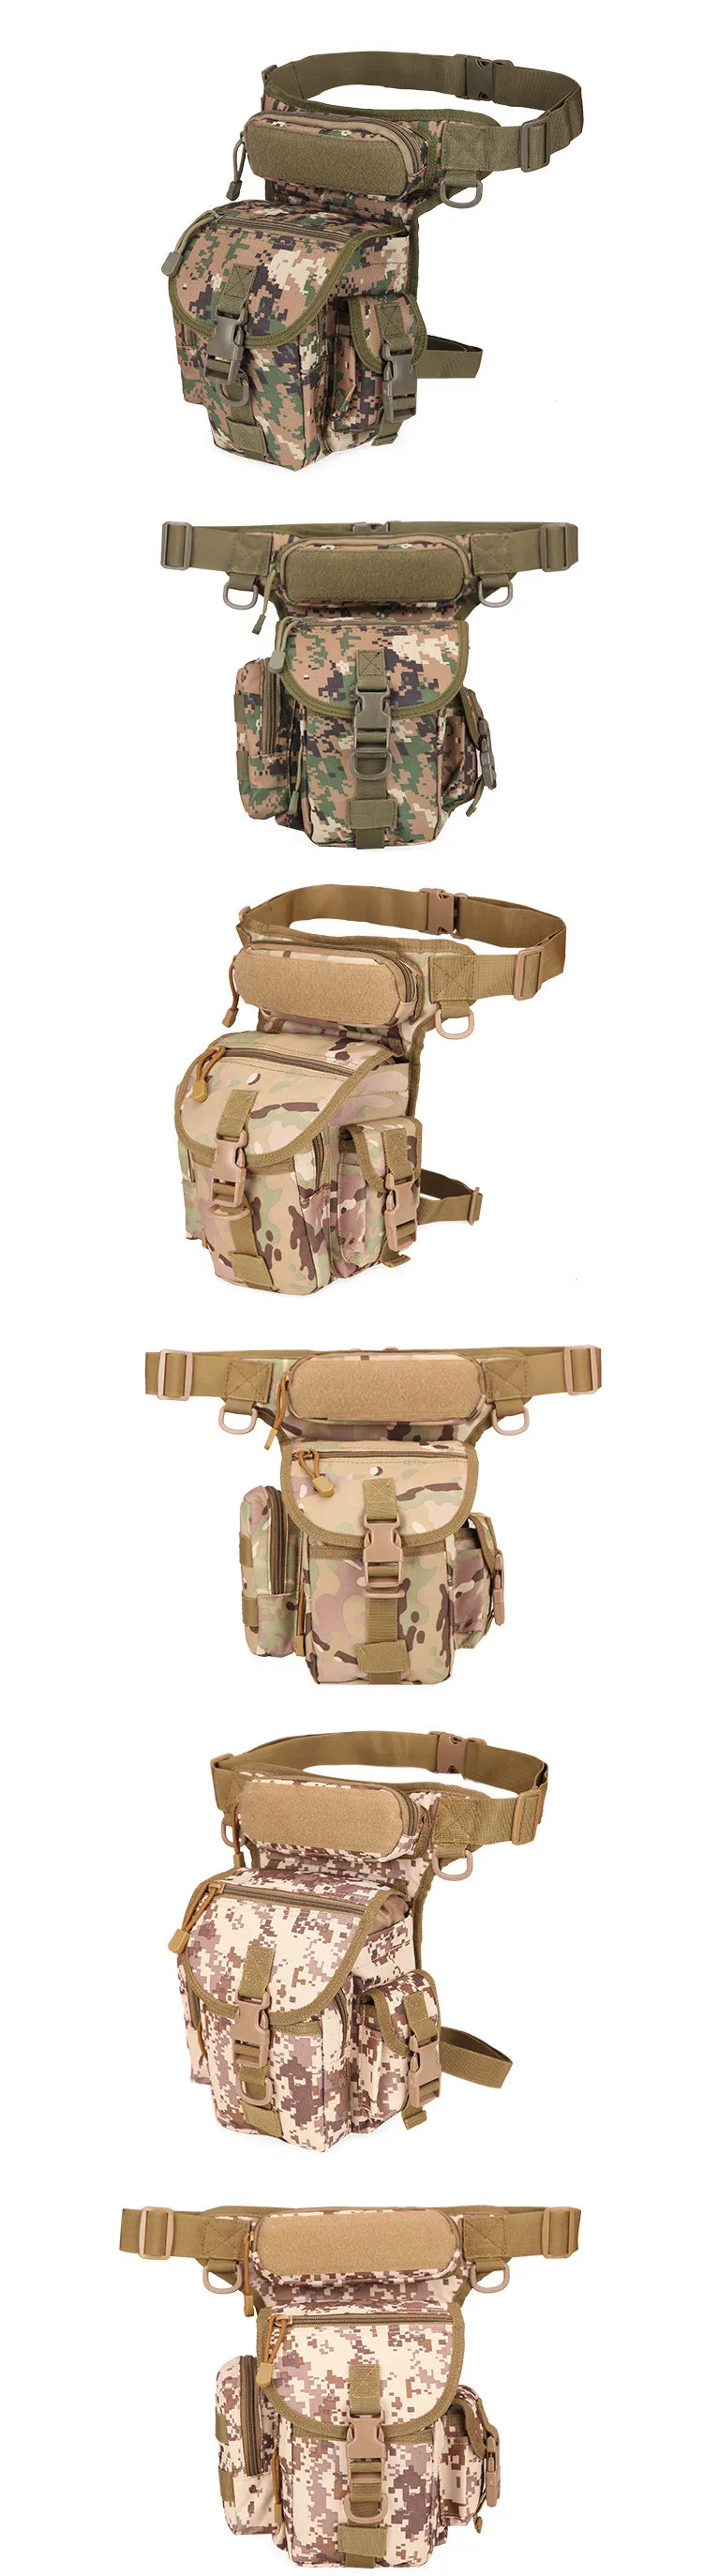 Mege Военная тактическая поясная сумка Камуфляж Molle ножная сумка Оксфорд водонепроницаемый армейский пояс бедро сумка оружие поясная сумка дропшиппинг